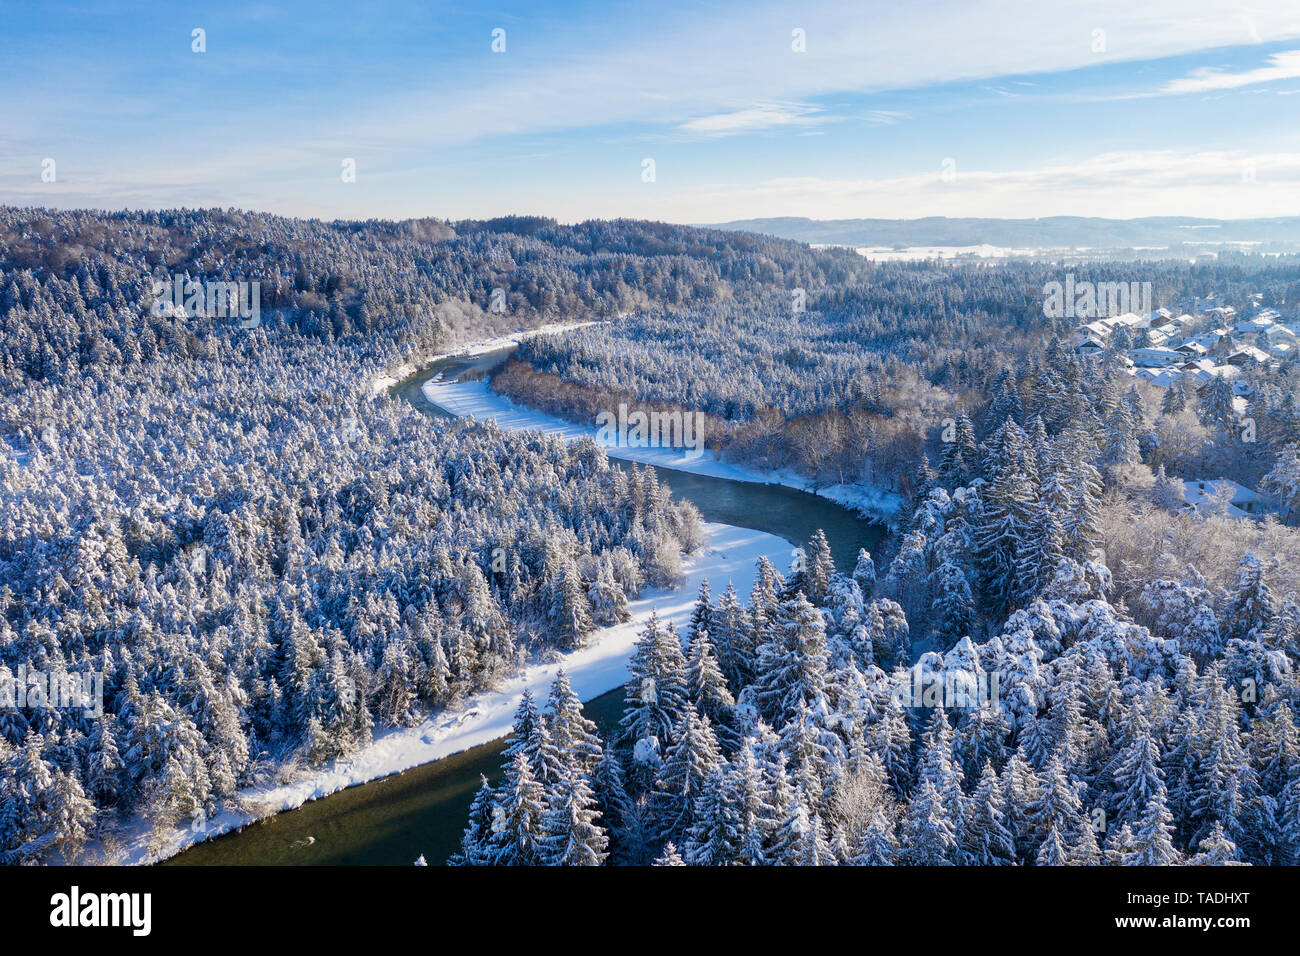 Germany, Bavaria, vue aérienne sur la rivière Isar et plaines de l'Isar près de Geretsried en hiver Banque D'Images